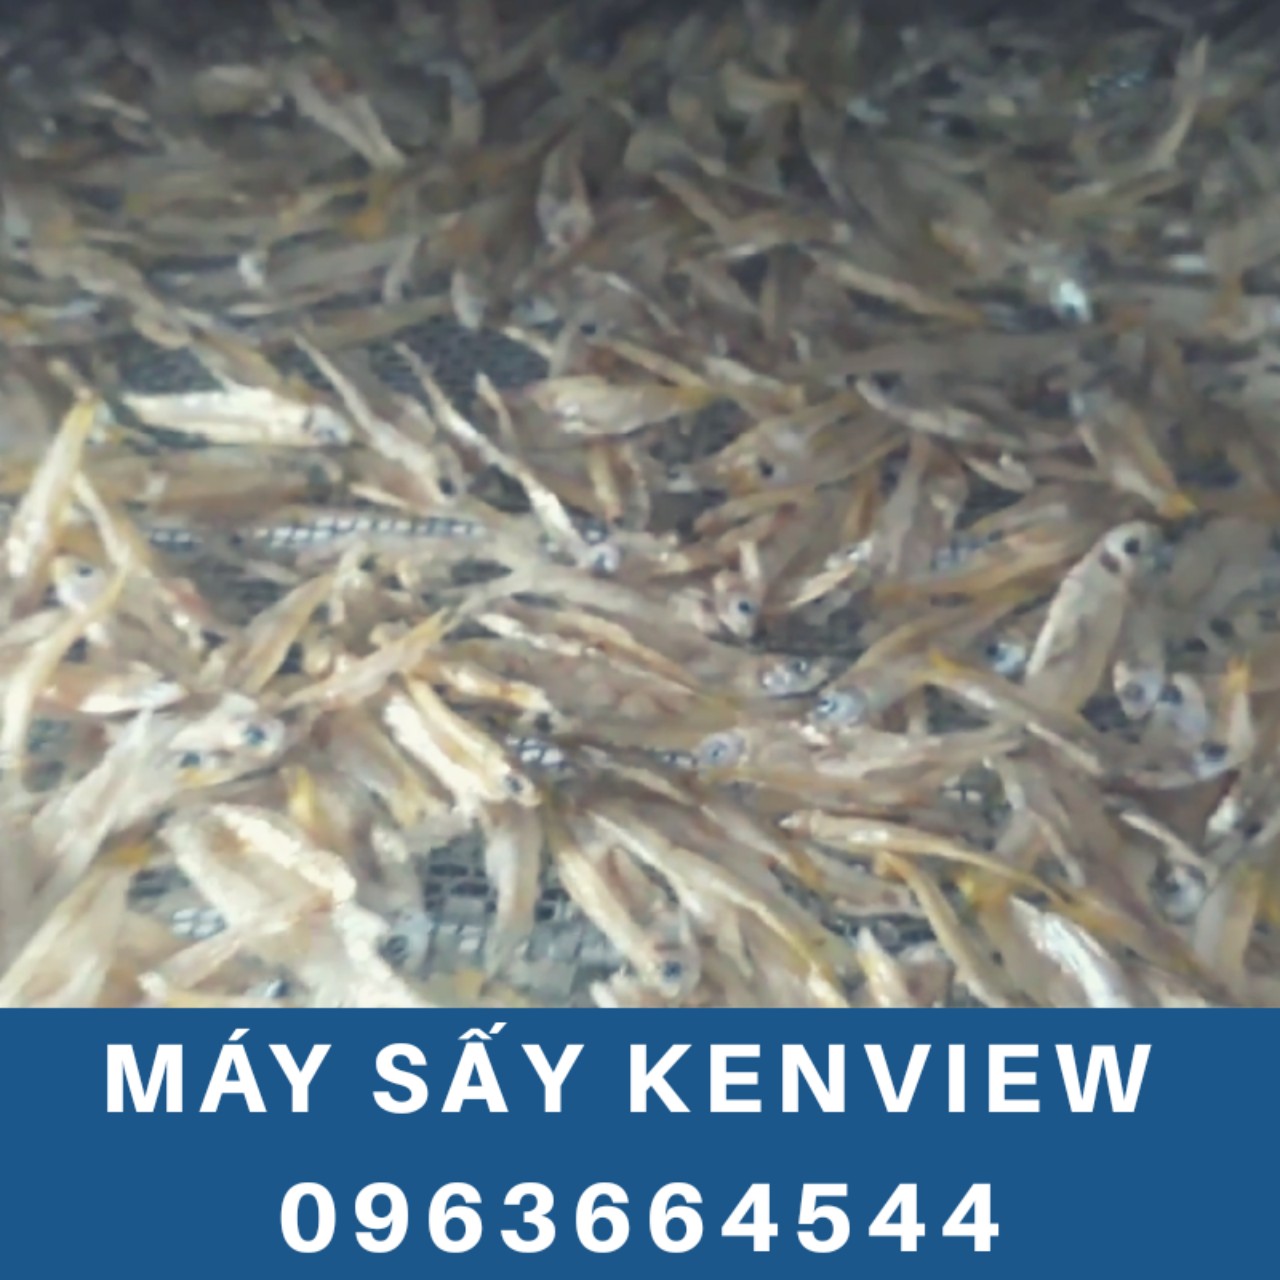 Kenview cung cấp máy sấy cá cơm ở Phan Rang - Máy sấy hải sản 